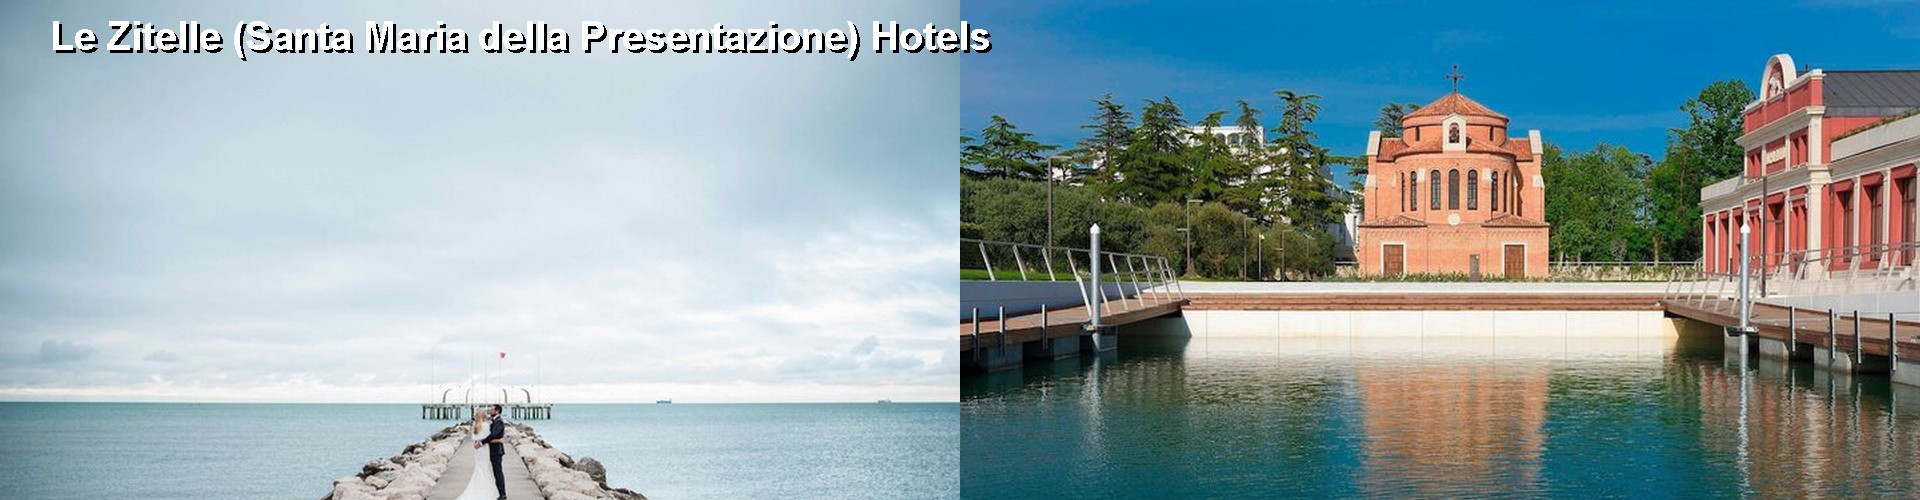 5 Best Hotels near Le Zitelle (Santa Maria della Presentazione)